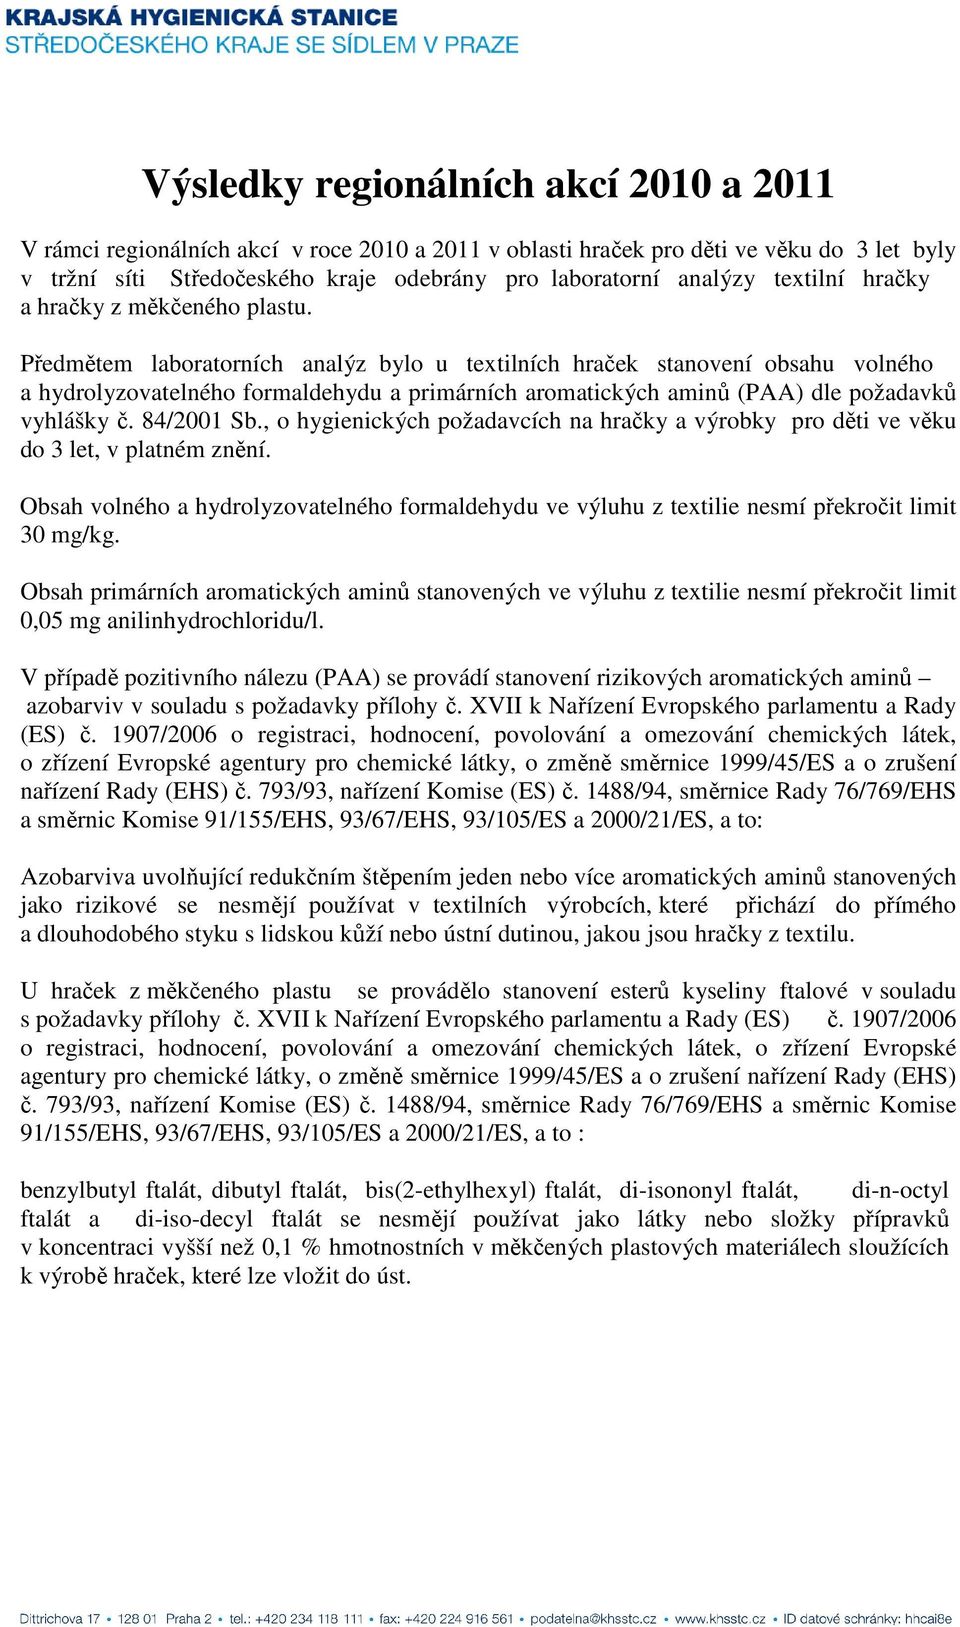 Předmětem laboratorních analýz bylo u textilních hraček stanovení obsahu volného a hydrolyzovatelného formaldehydu a primárních aromatických aminů (PAA) dle požadavků vyhlášky č. 84/2001 Sb.